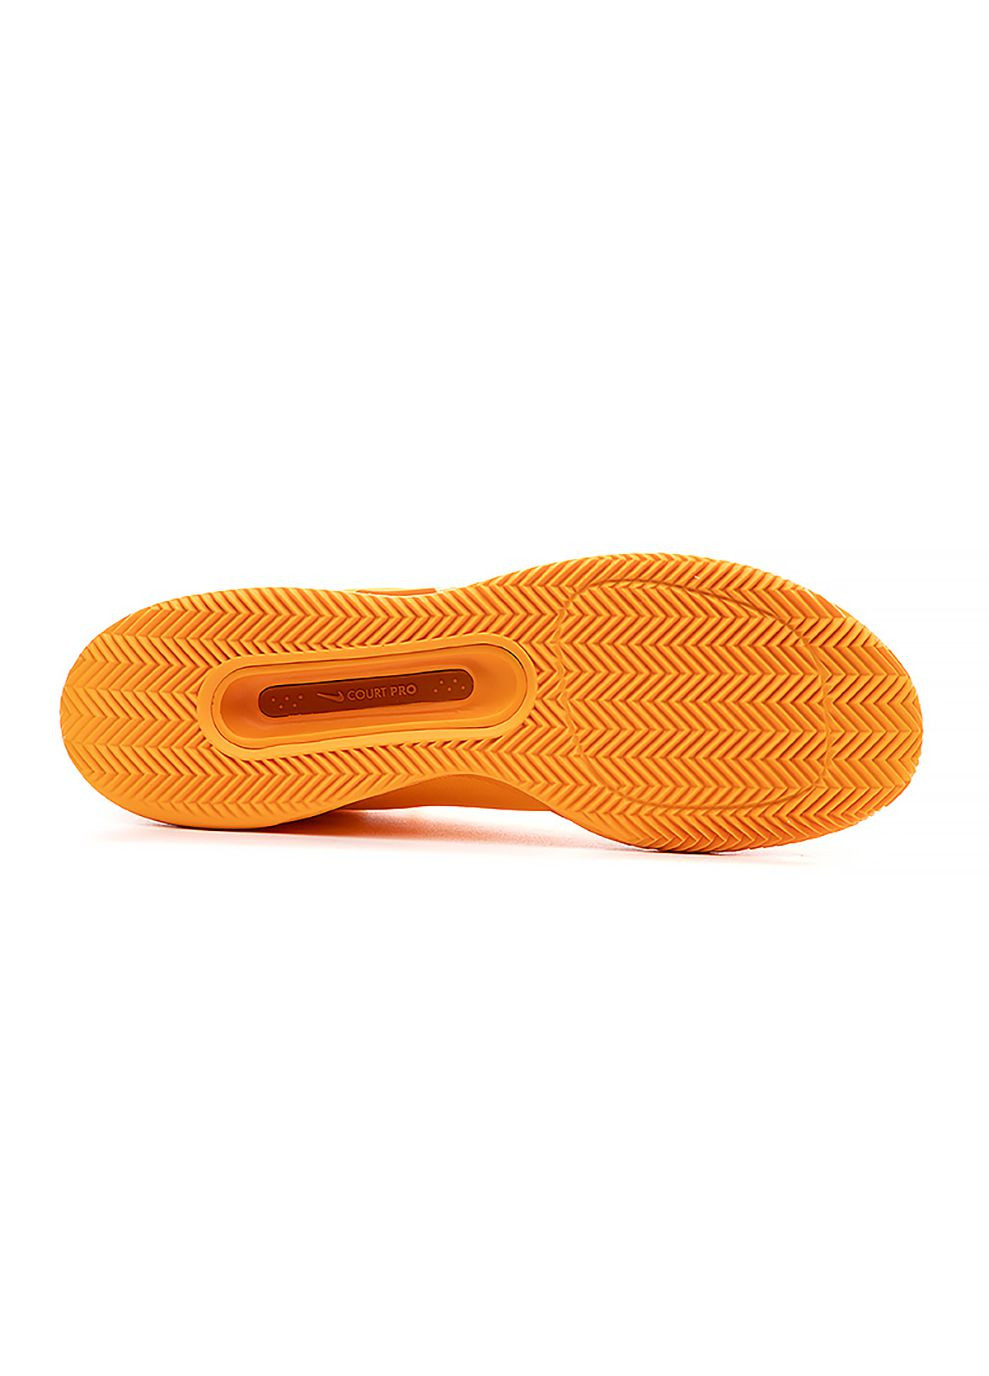 Оранжевые демисезонные мужские кроссовки zoom court pro cly оранжевый Nike